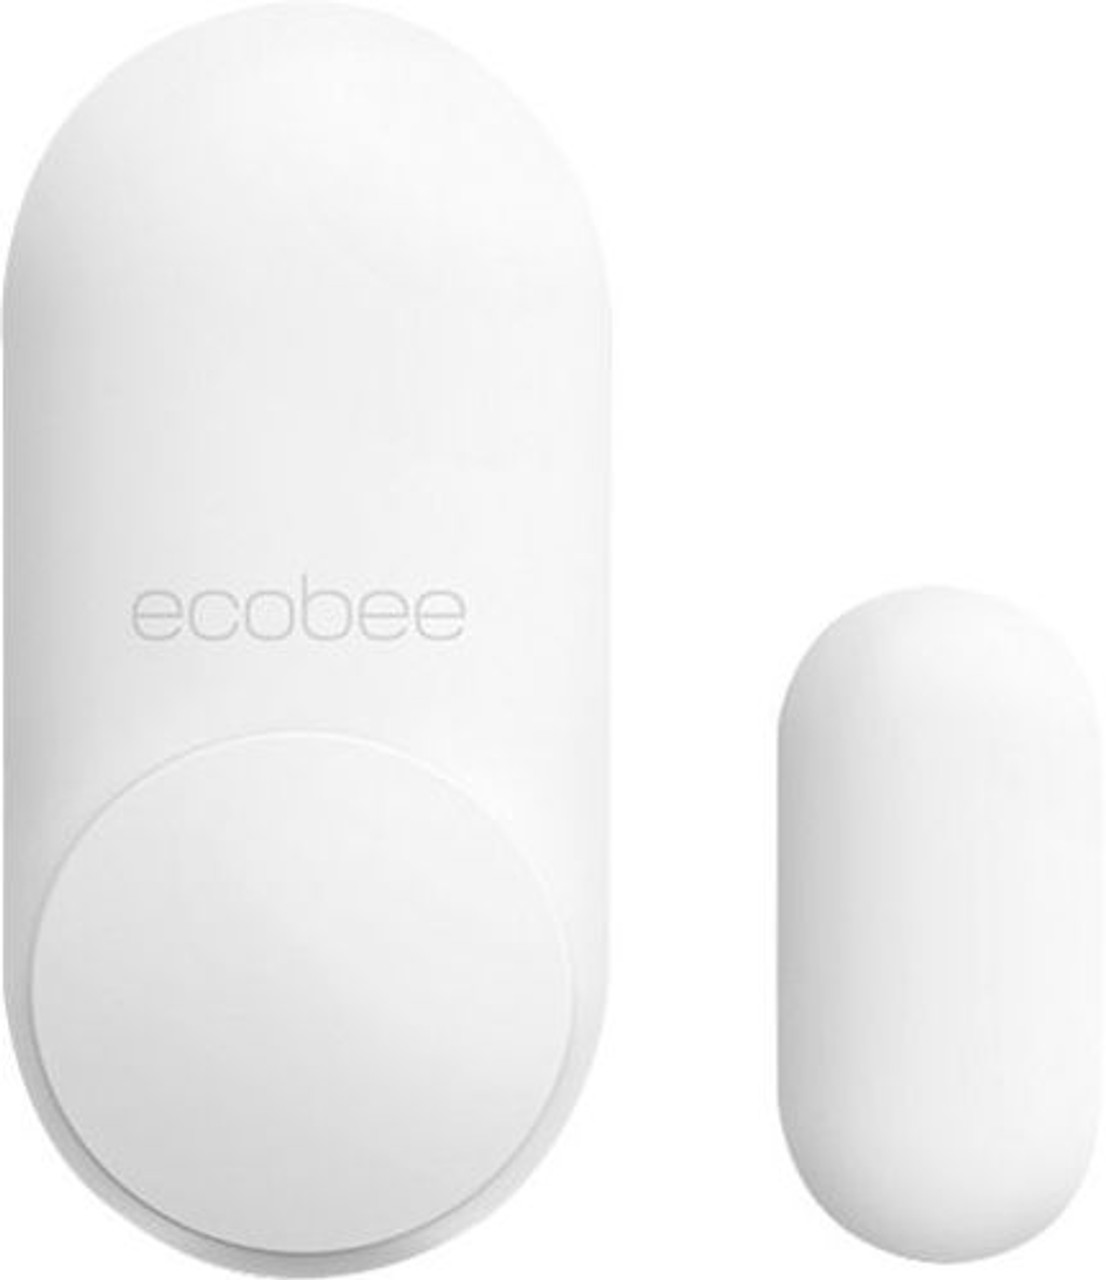 ecobee - SmartSensor for Doors and Windows (2-Pack)